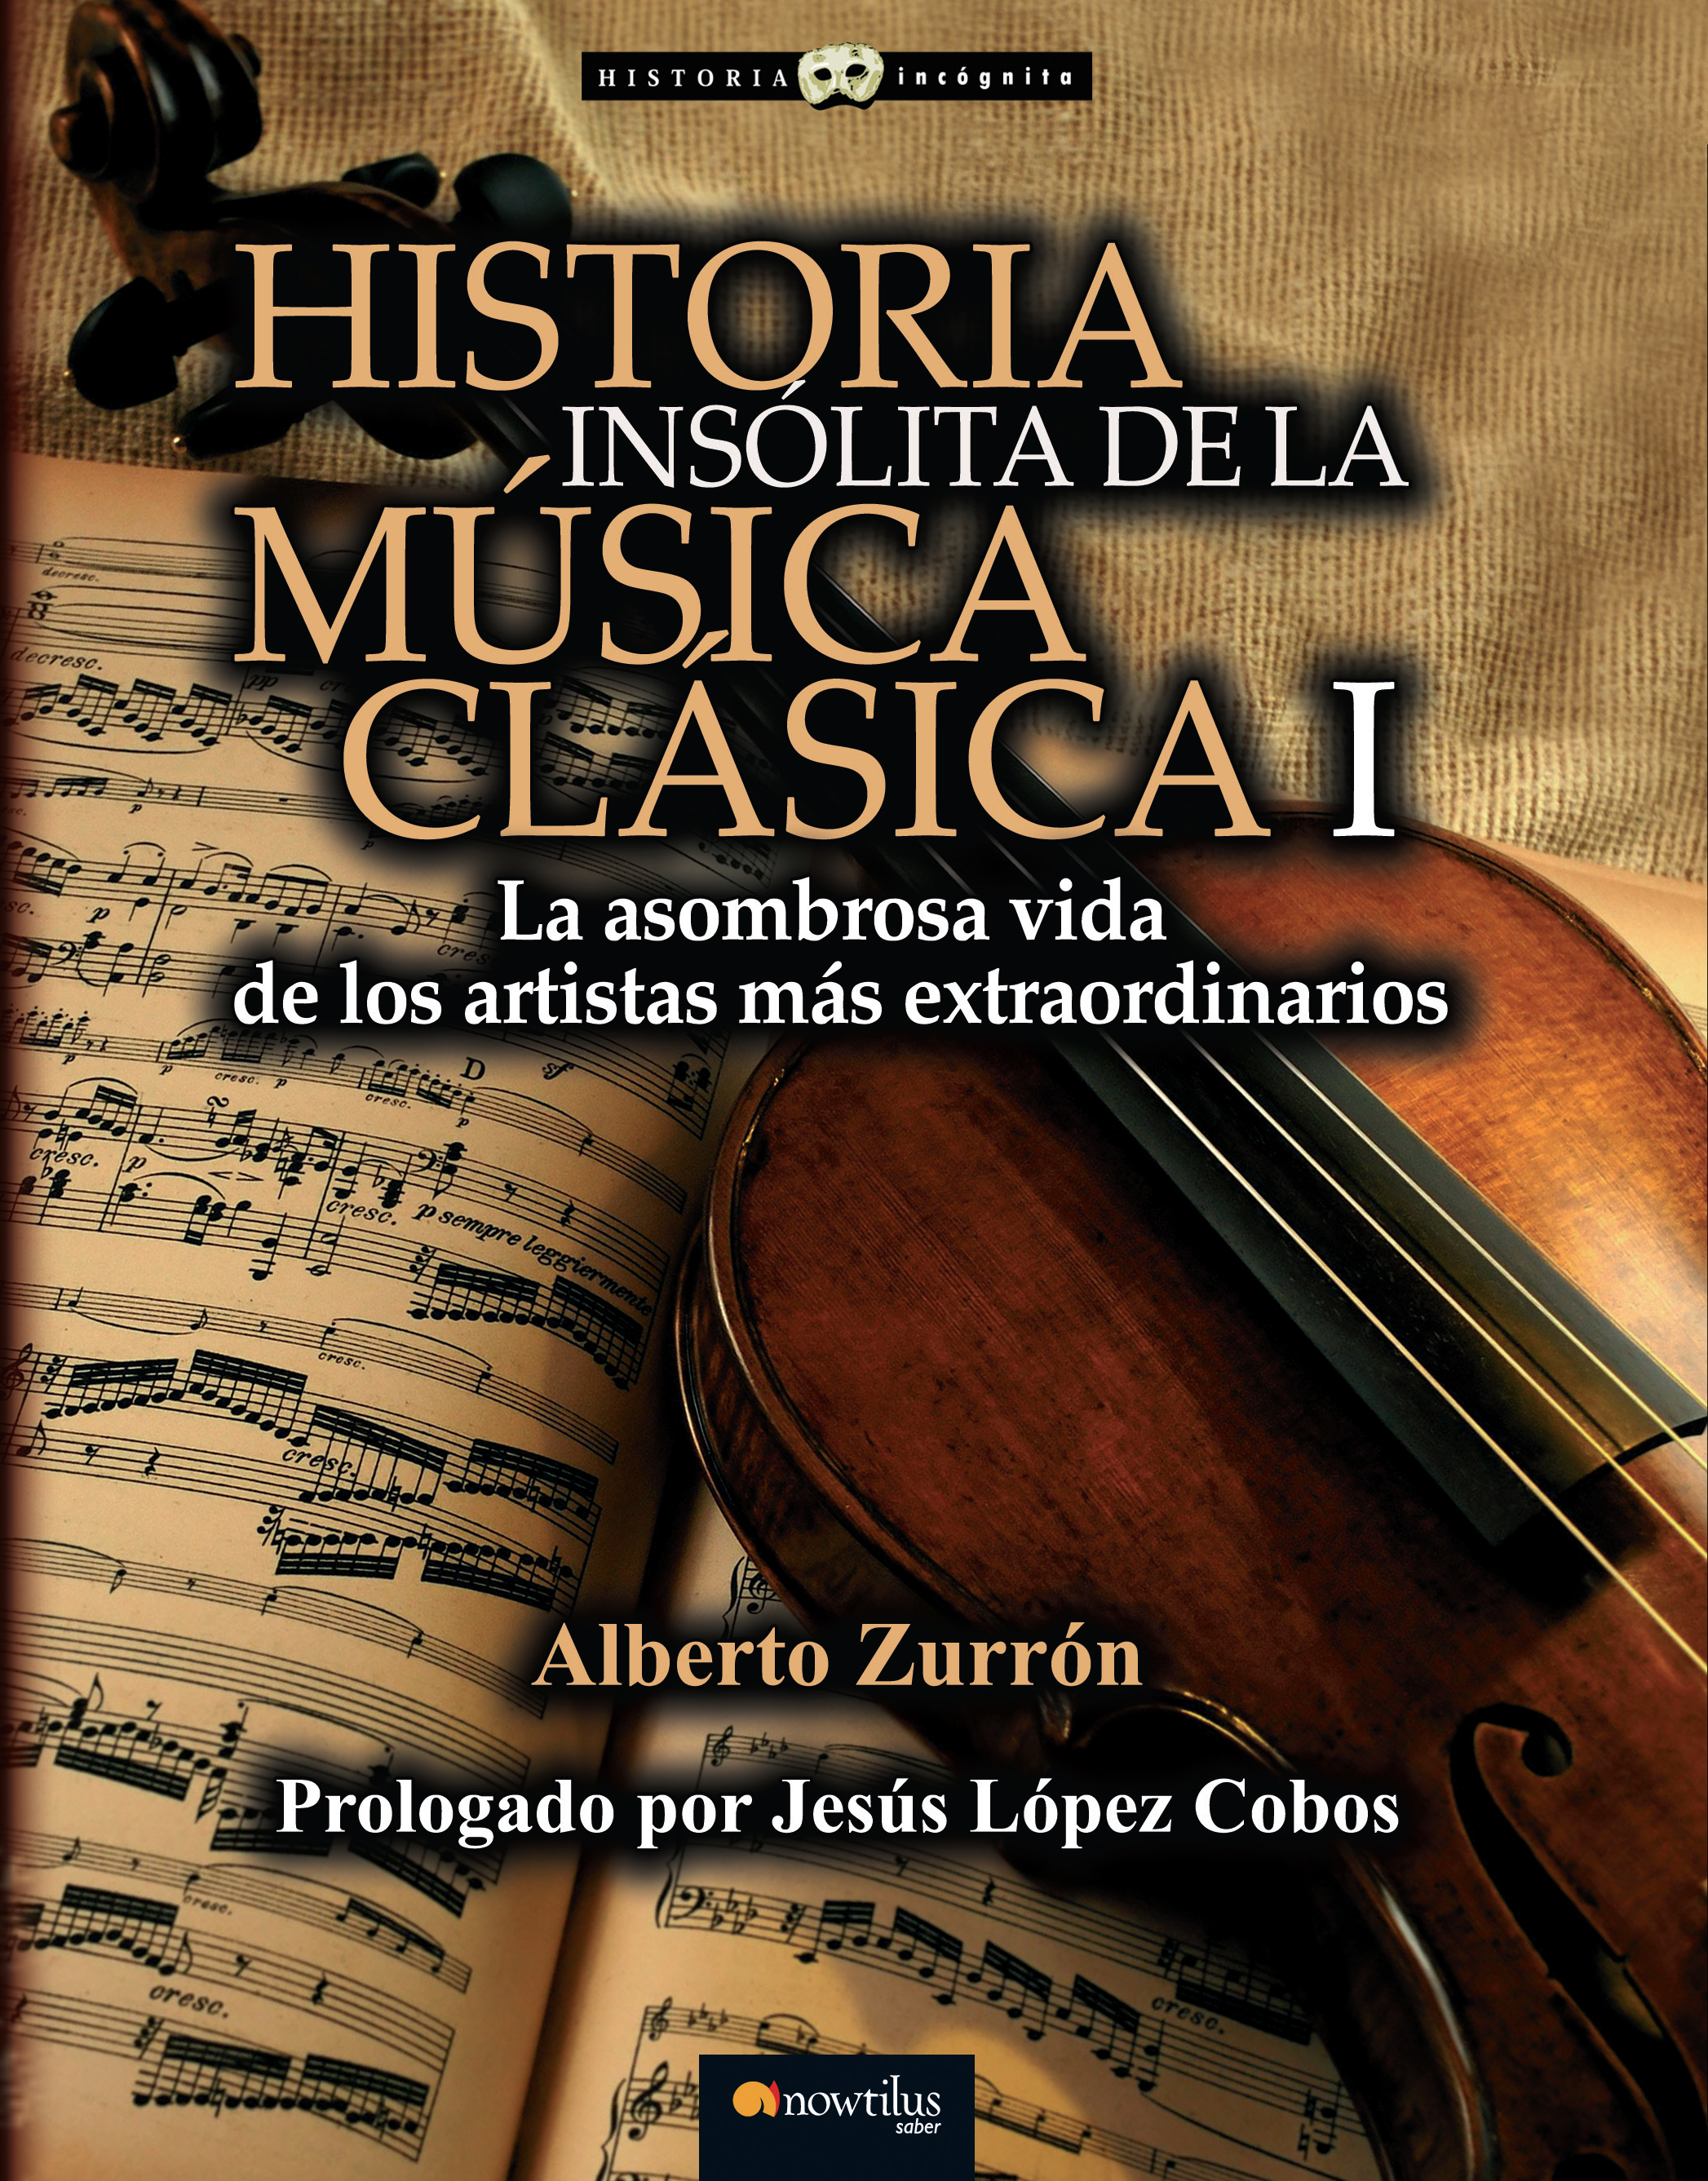 Historia insólita de la música clásica de Alberto Zurrón